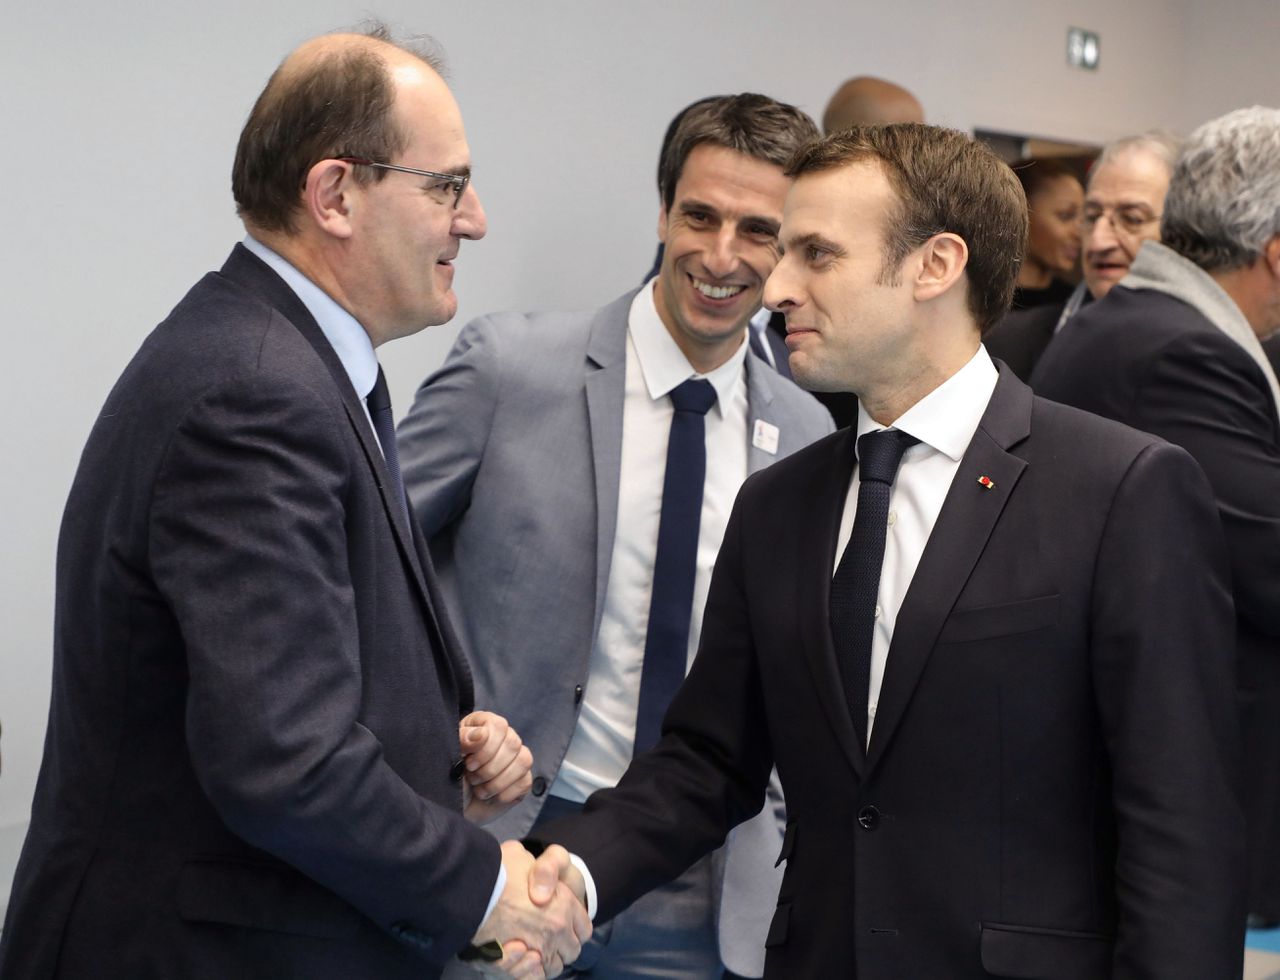 Macron treedt uit de schaduw van zijn premier - NRC